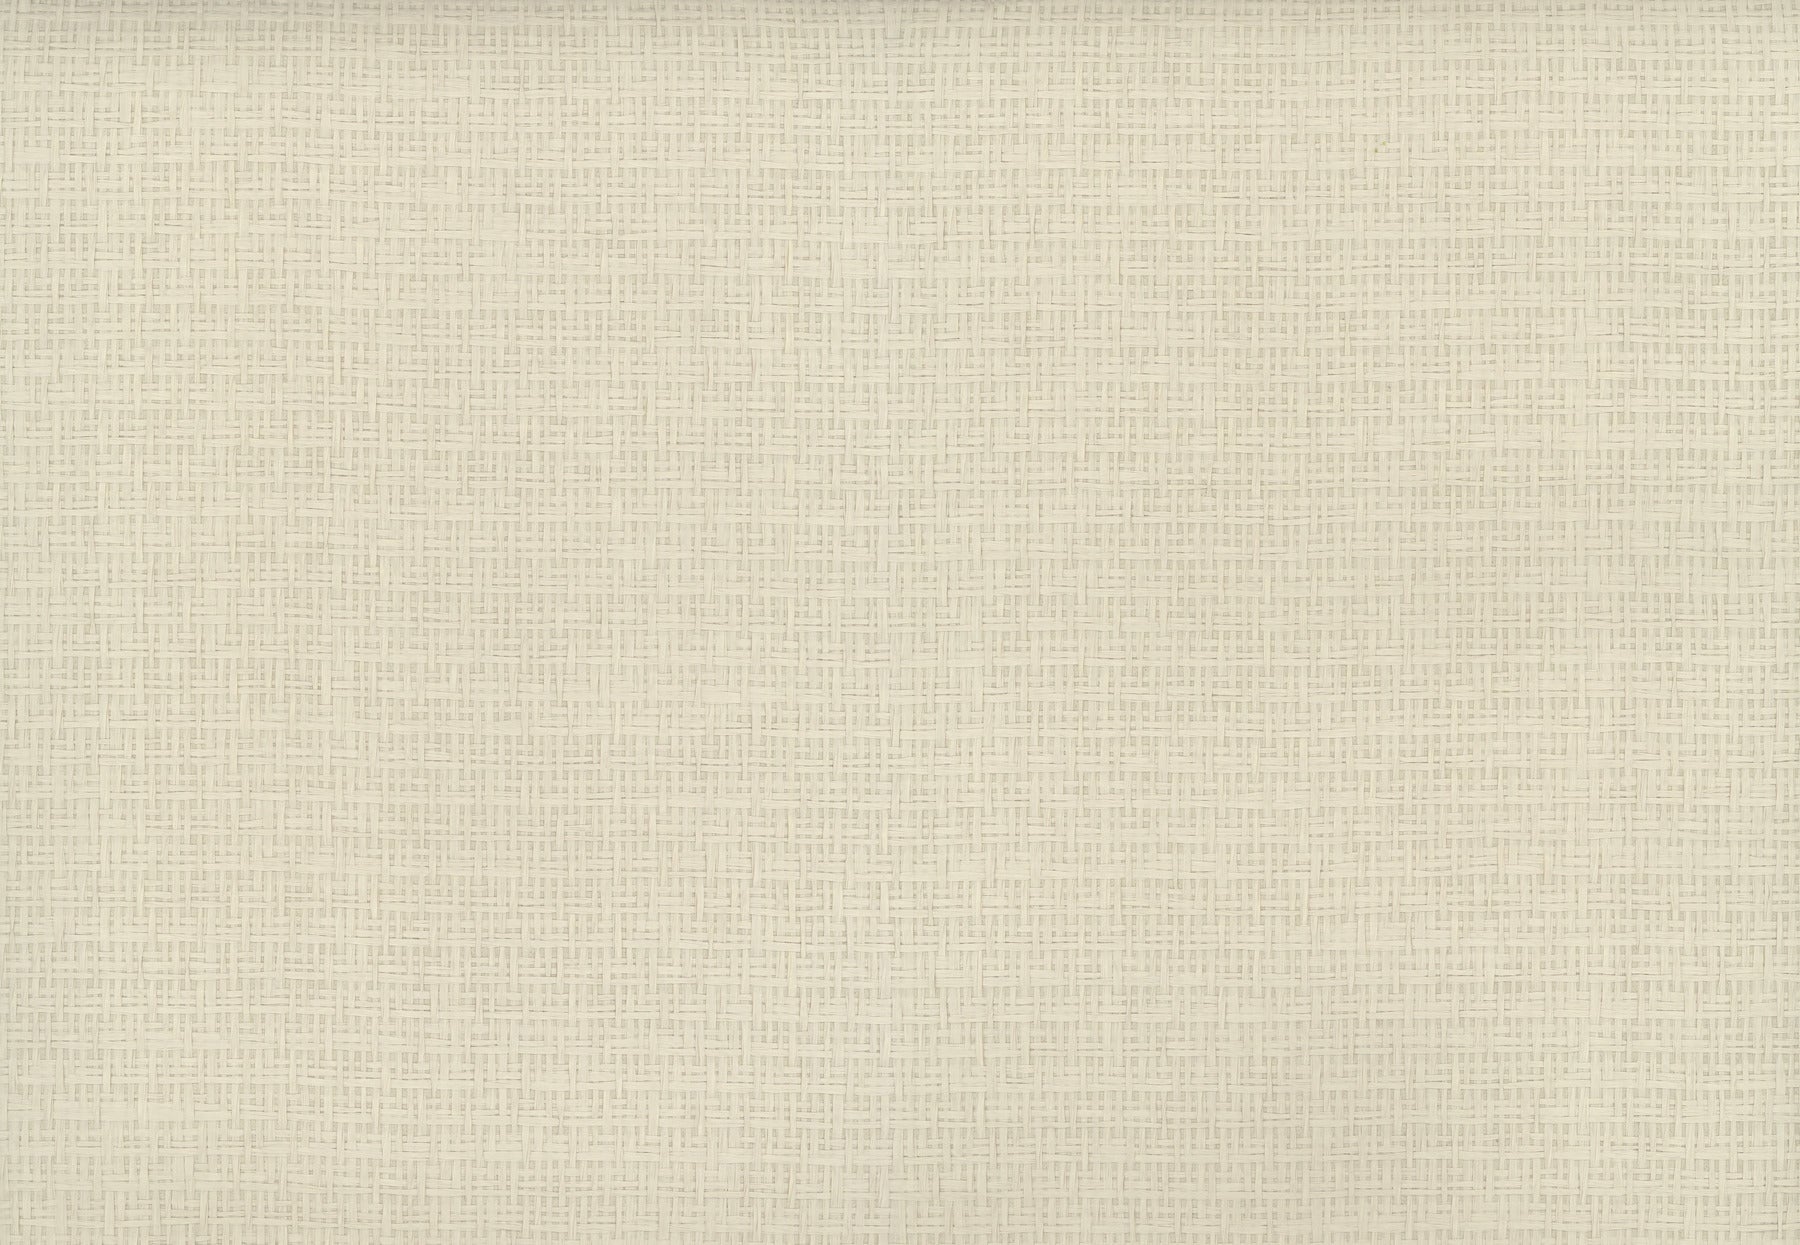 Tatami Weave Wallpaper Wallpaper Ronald Redding Designs Yard Natural Cream 